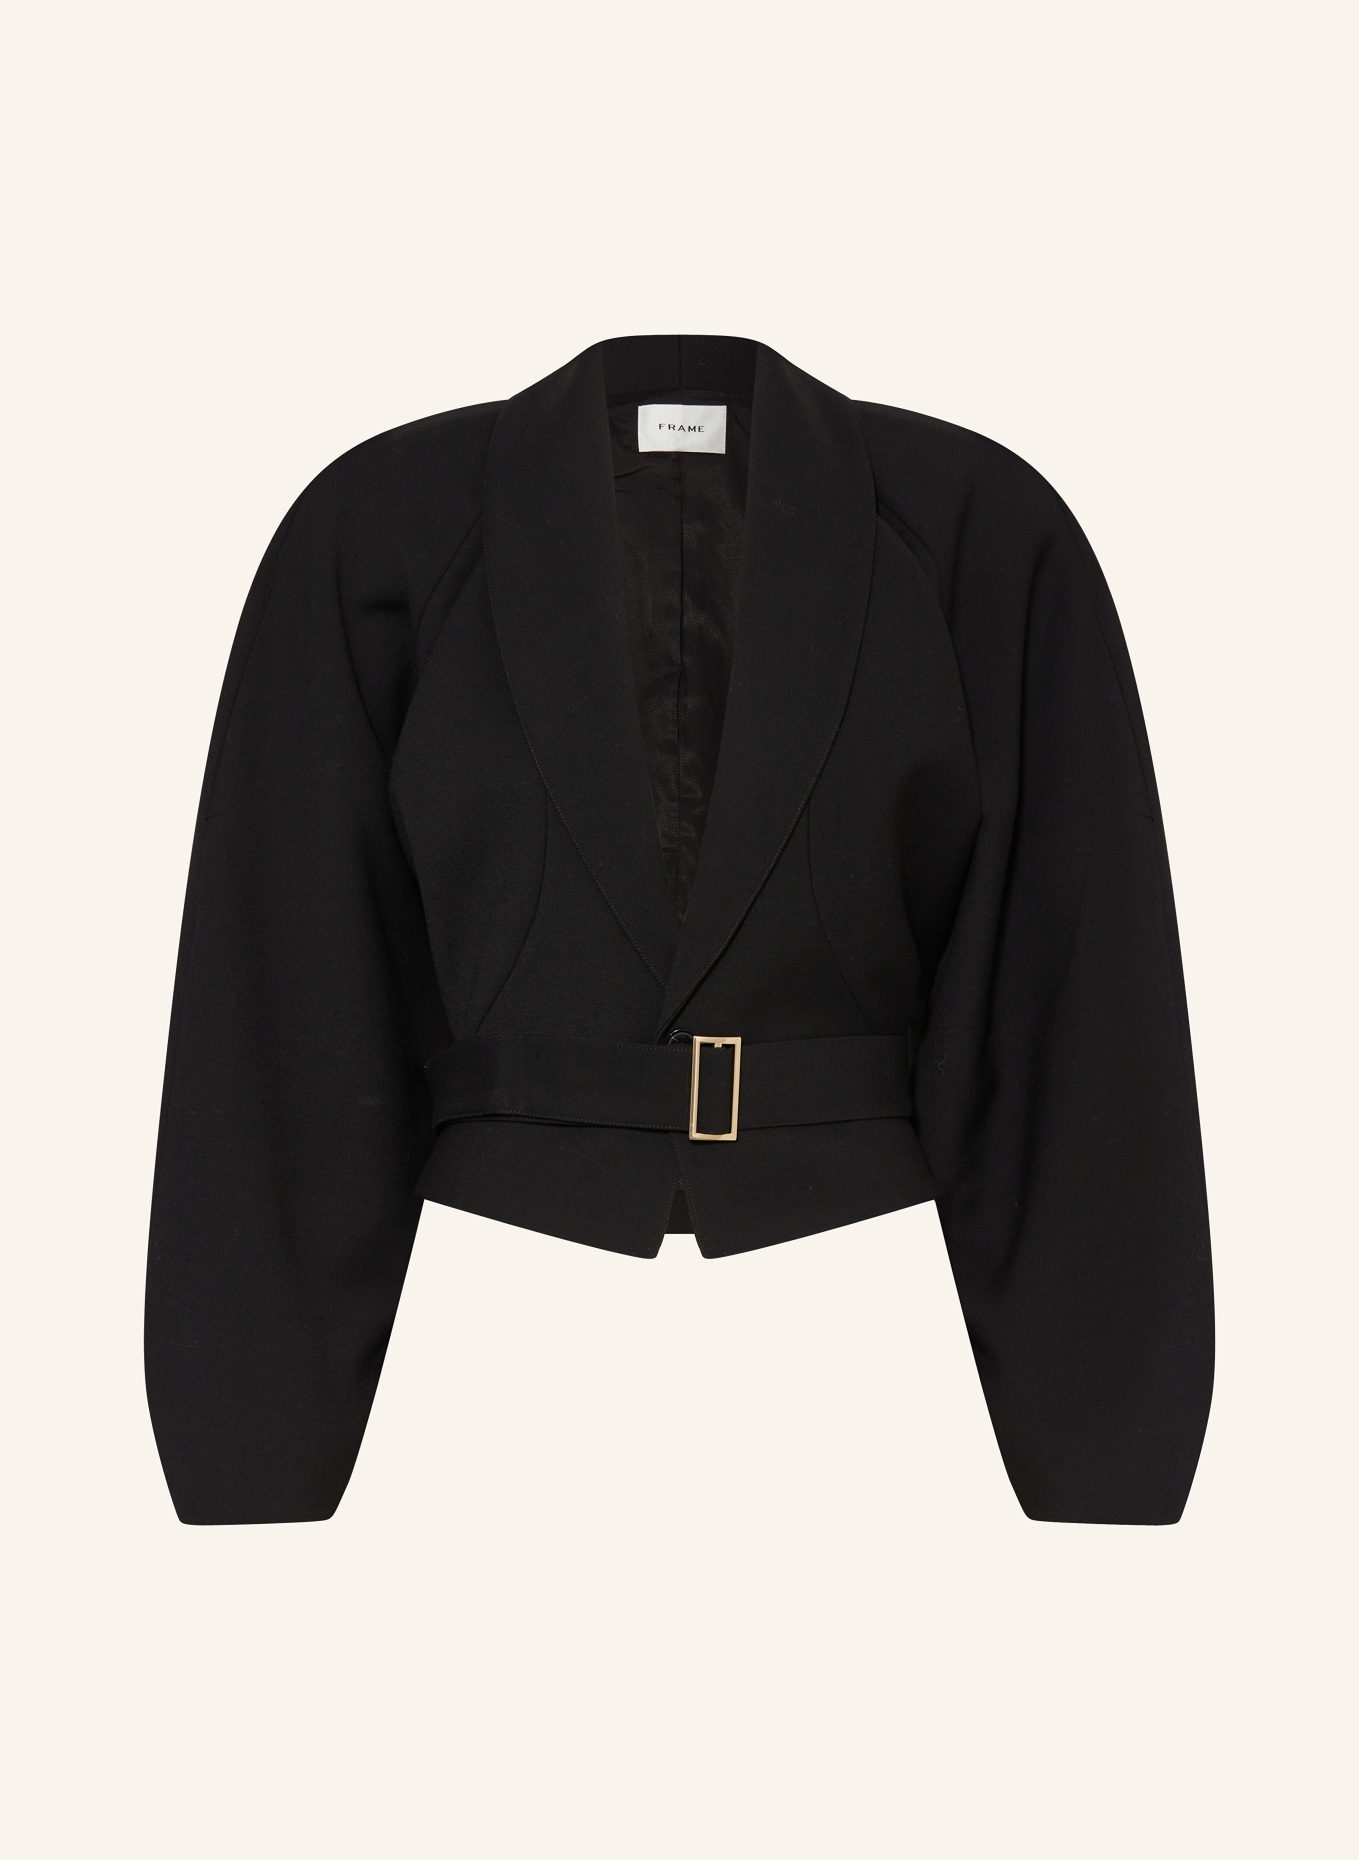 FRAME Jacket, Color: BLACK (Image 1)